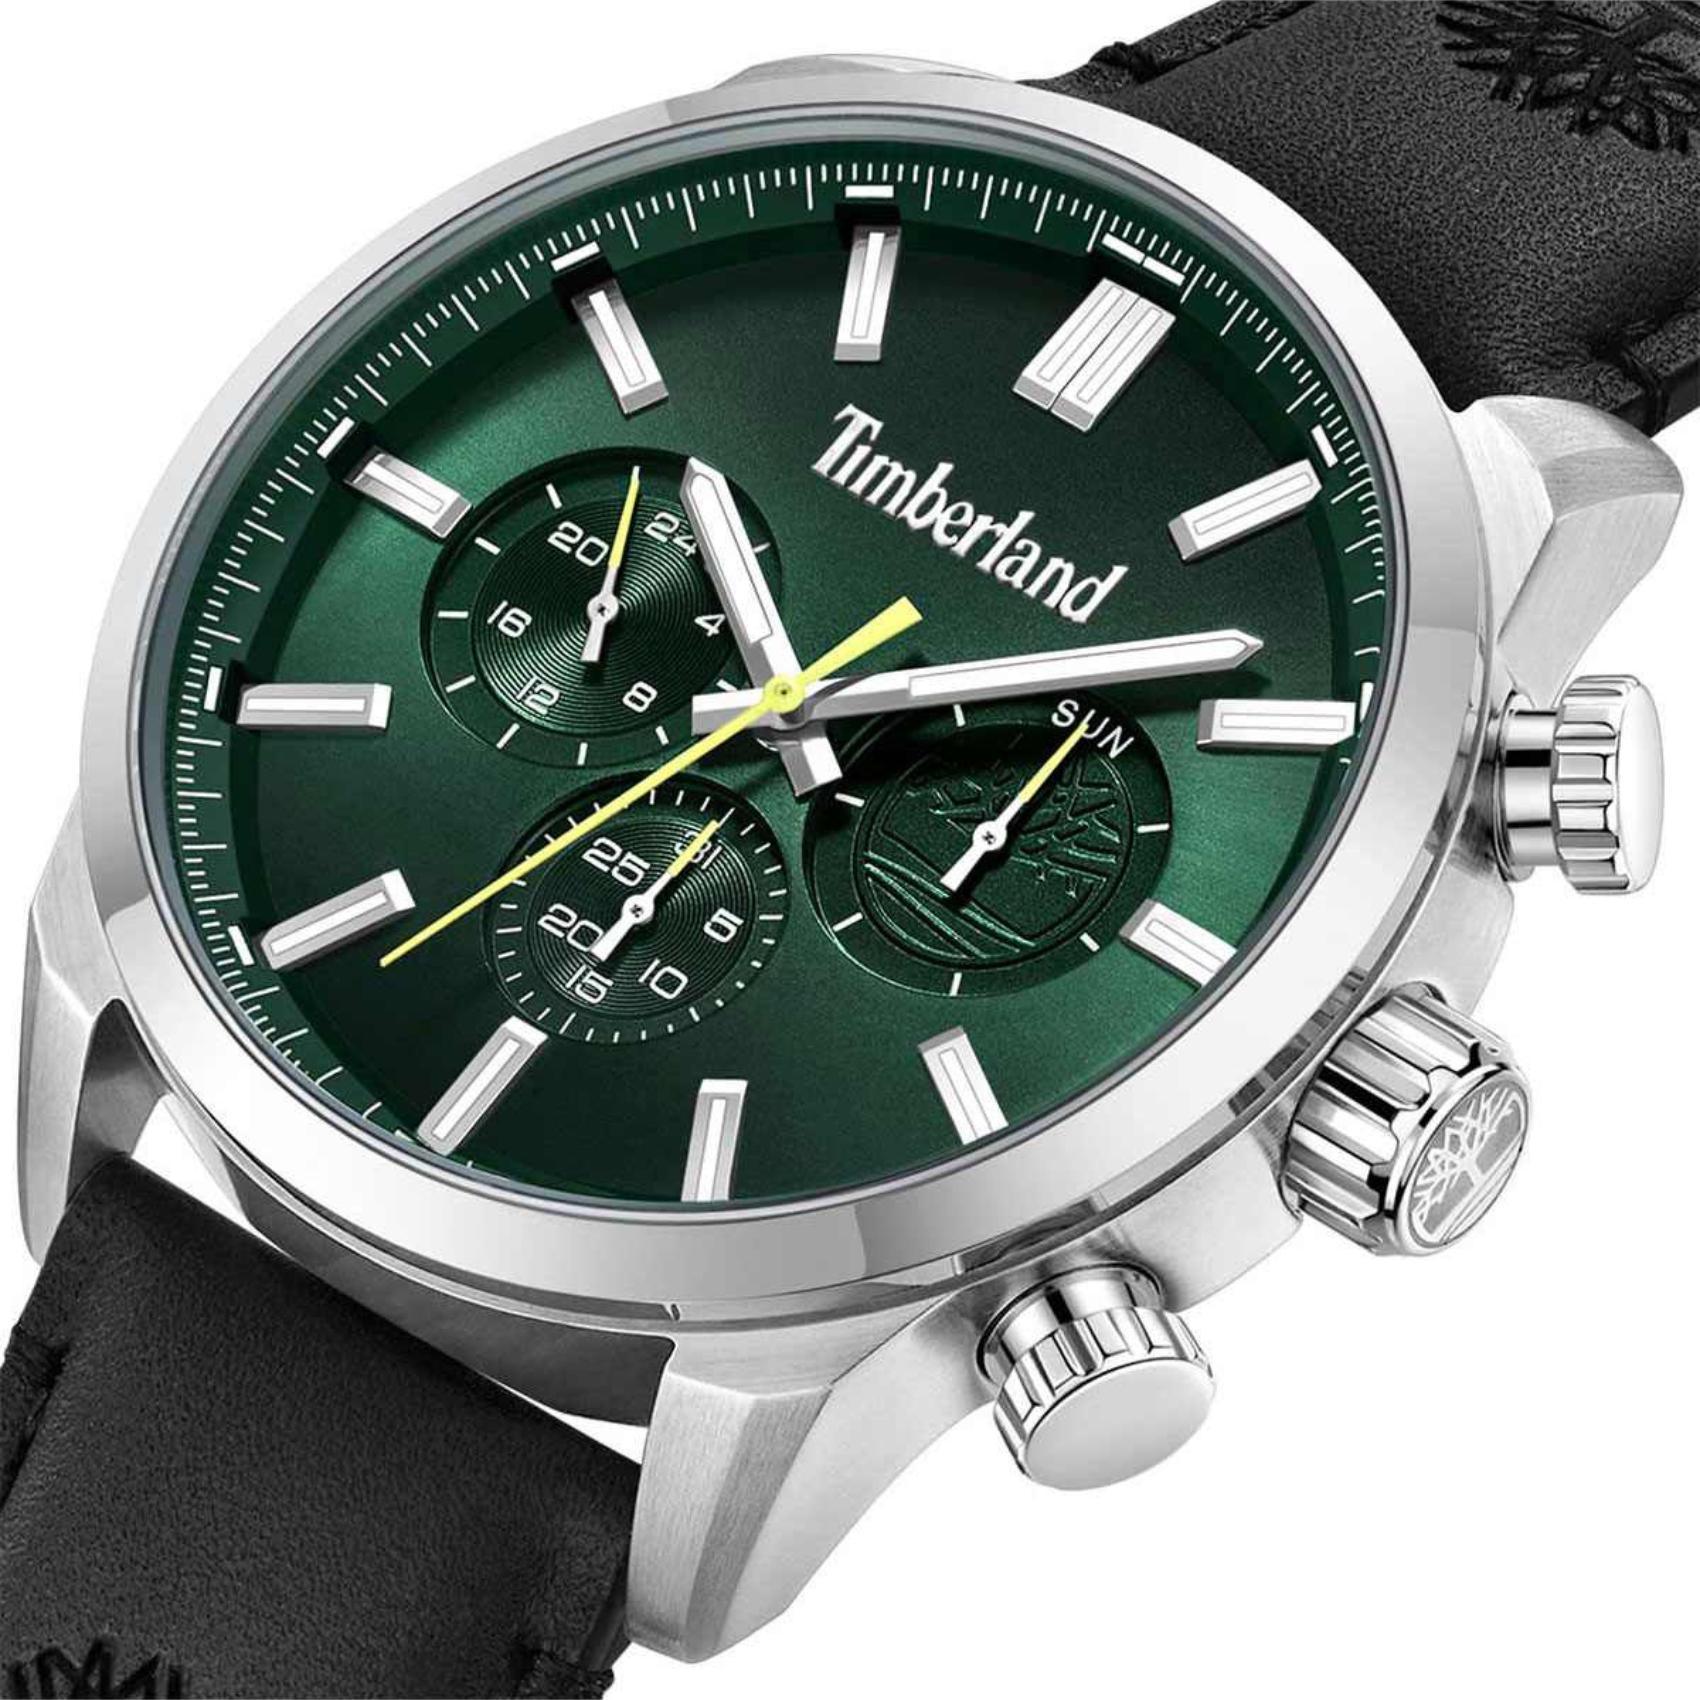 Αντρικό ρολόι Timberland Henniker II TDWGF0028703 με μαύρο δερμάτινο λουράκι και πράσινο καντράν διαμέτρου 46mm και ημέρα-ημερομηνία.